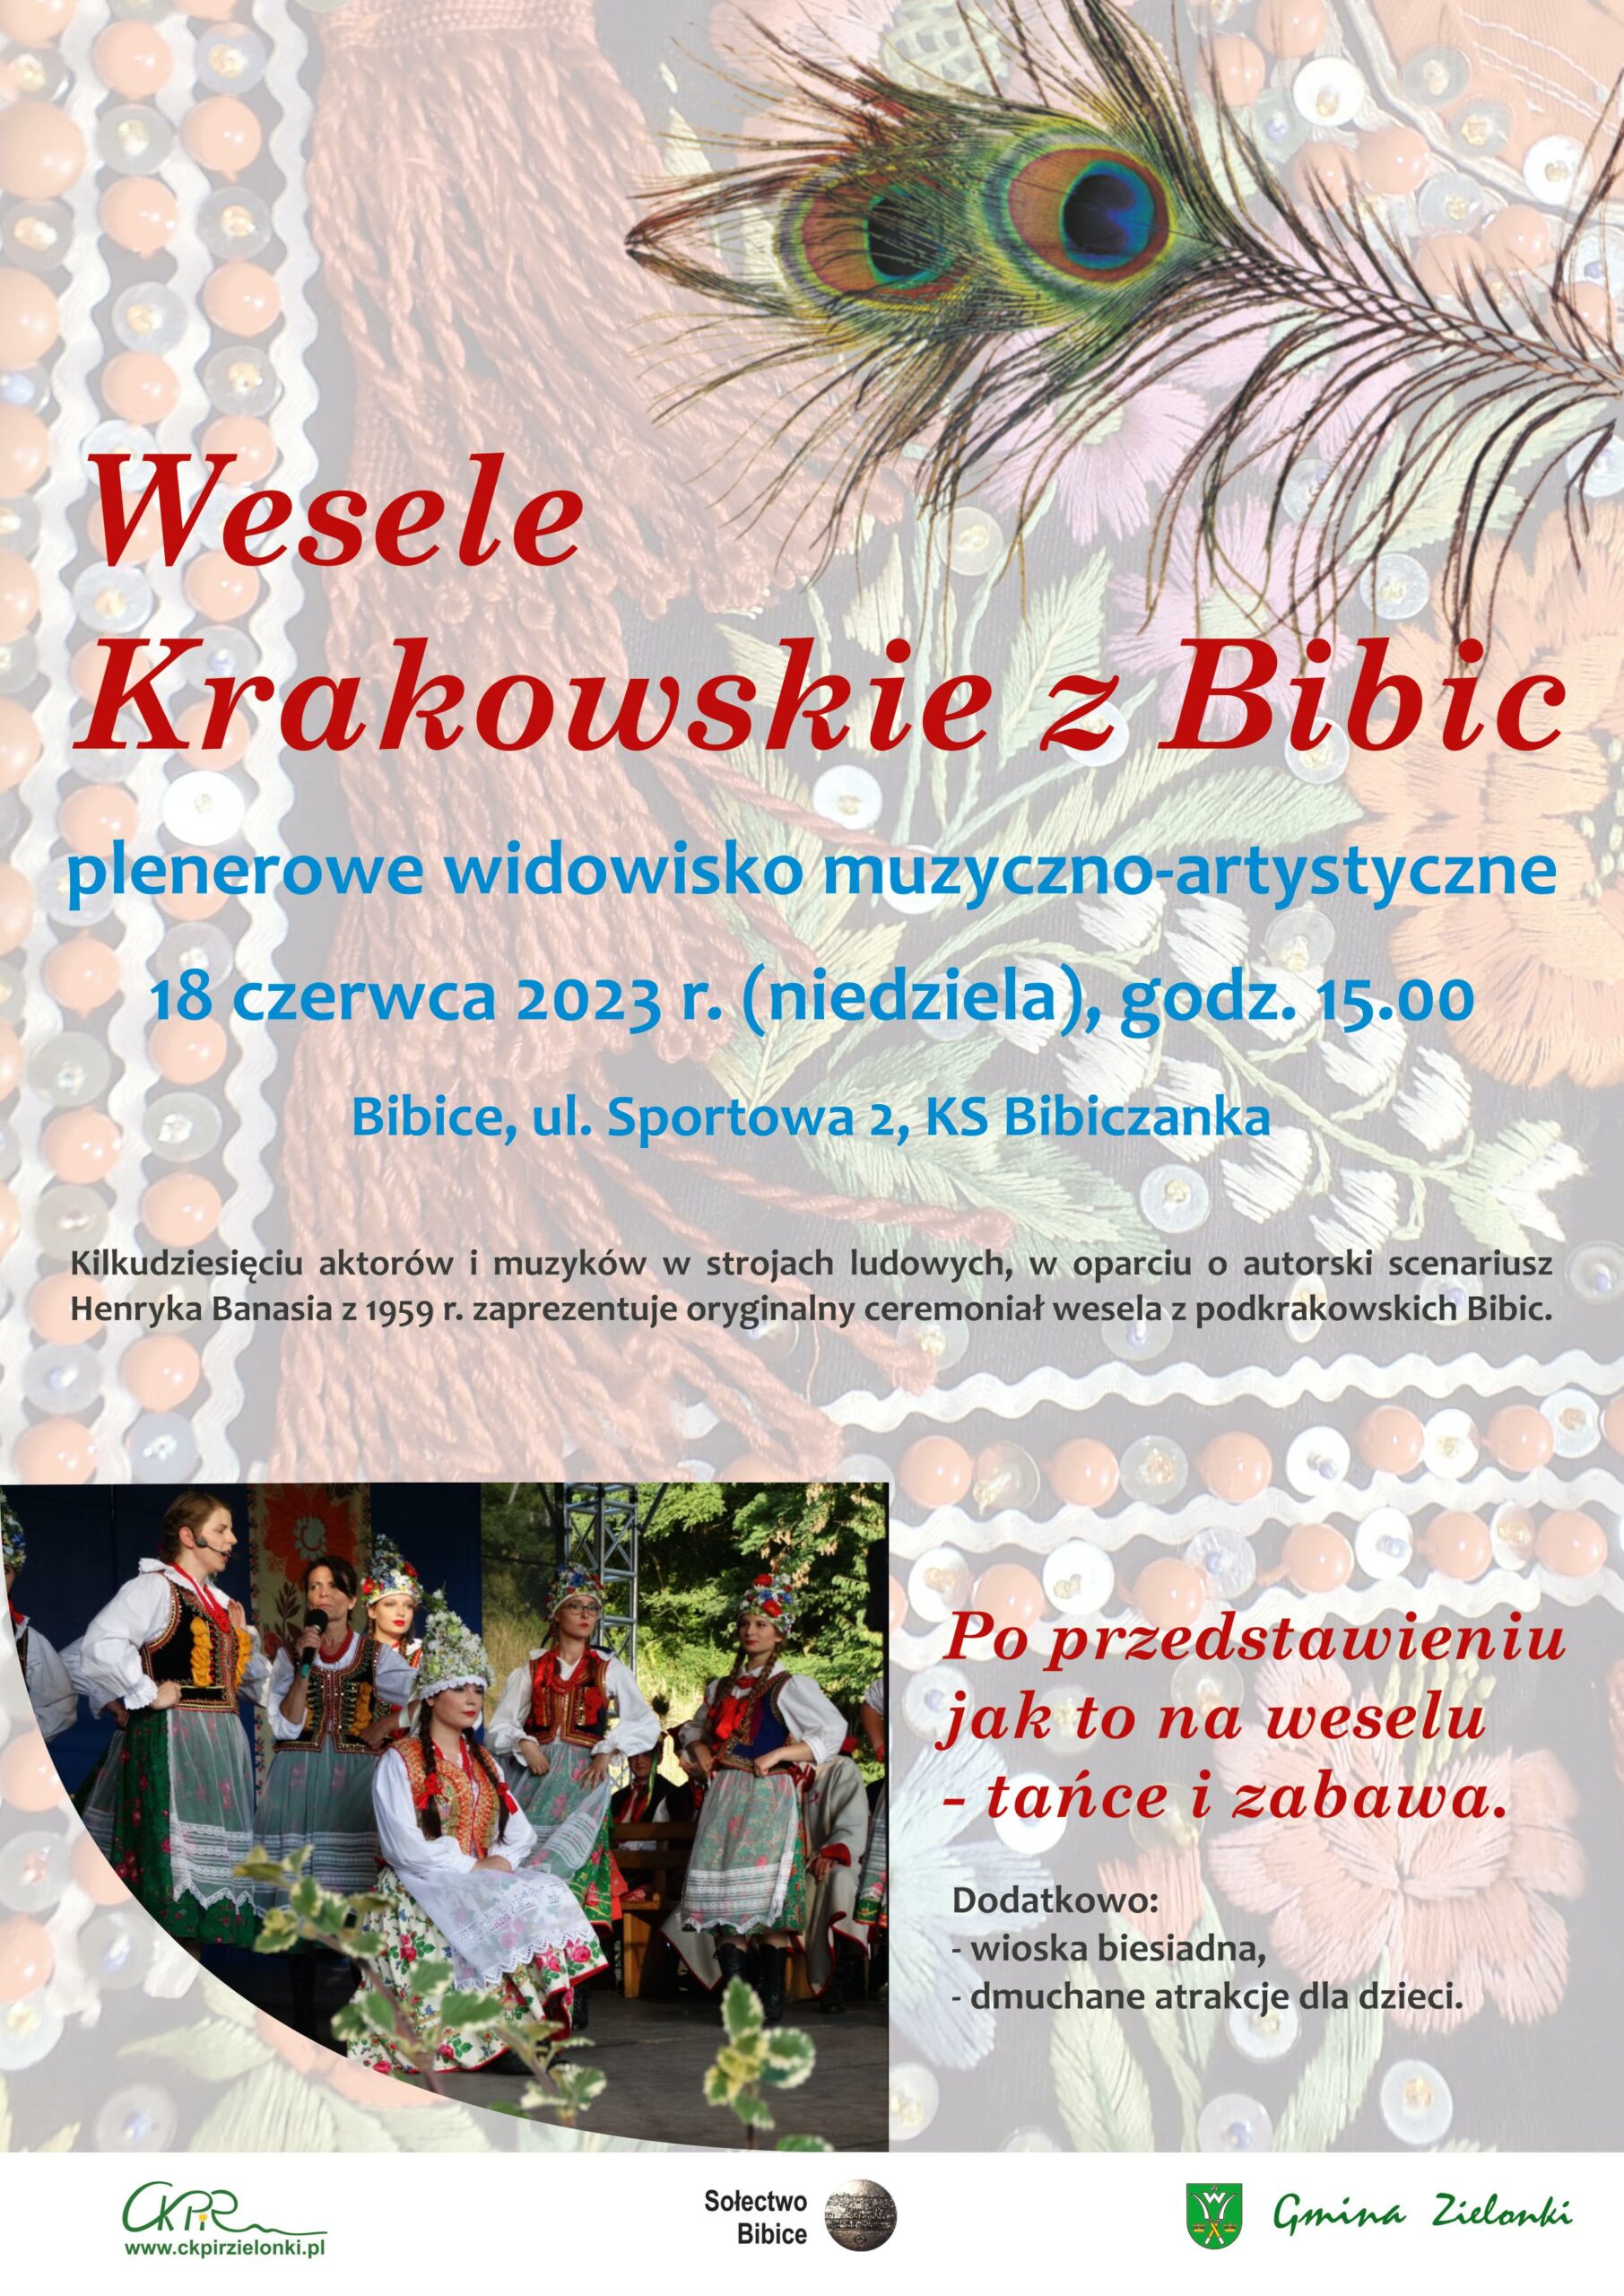 Wesele Krakowskie z Bibic